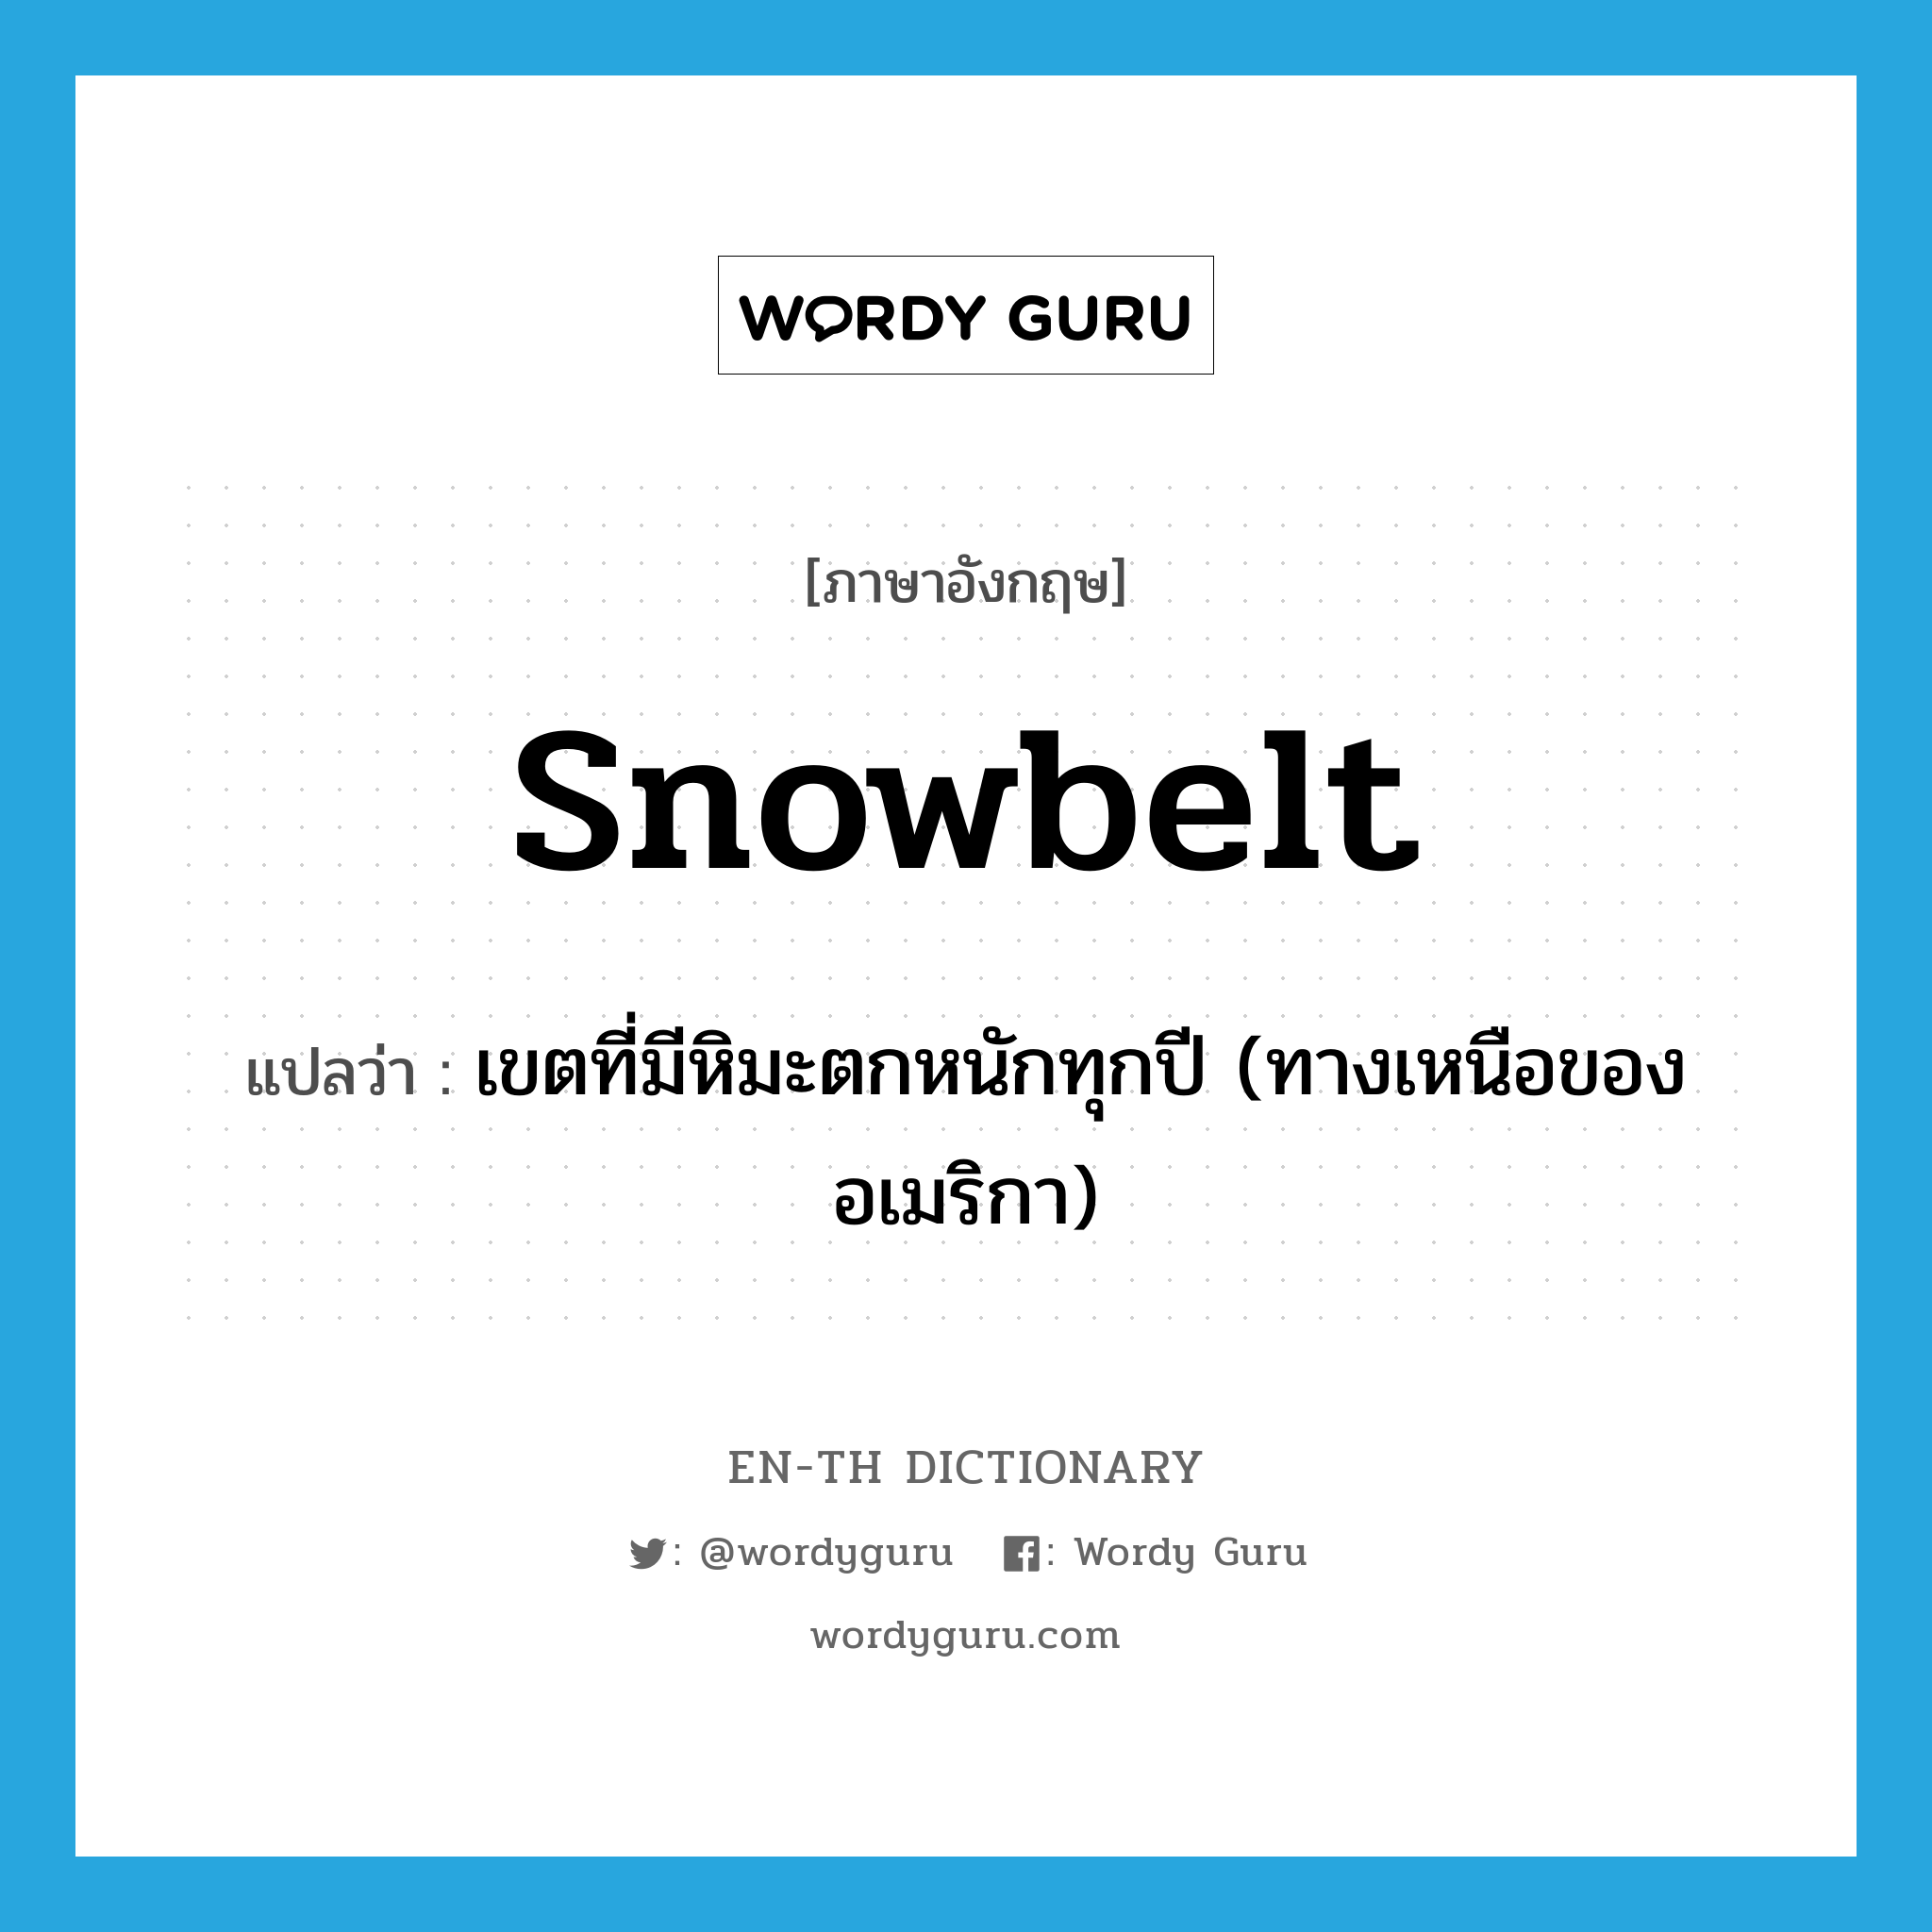 เขตที่มีหิมะตกหนักทุกปี (ทางเหนือของอเมริกา) ภาษาอังกฤษ?, คำศัพท์ภาษาอังกฤษ เขตที่มีหิมะตกหนักทุกปี (ทางเหนือของอเมริกา) แปลว่า Snowbelt ประเภท N หมวด N